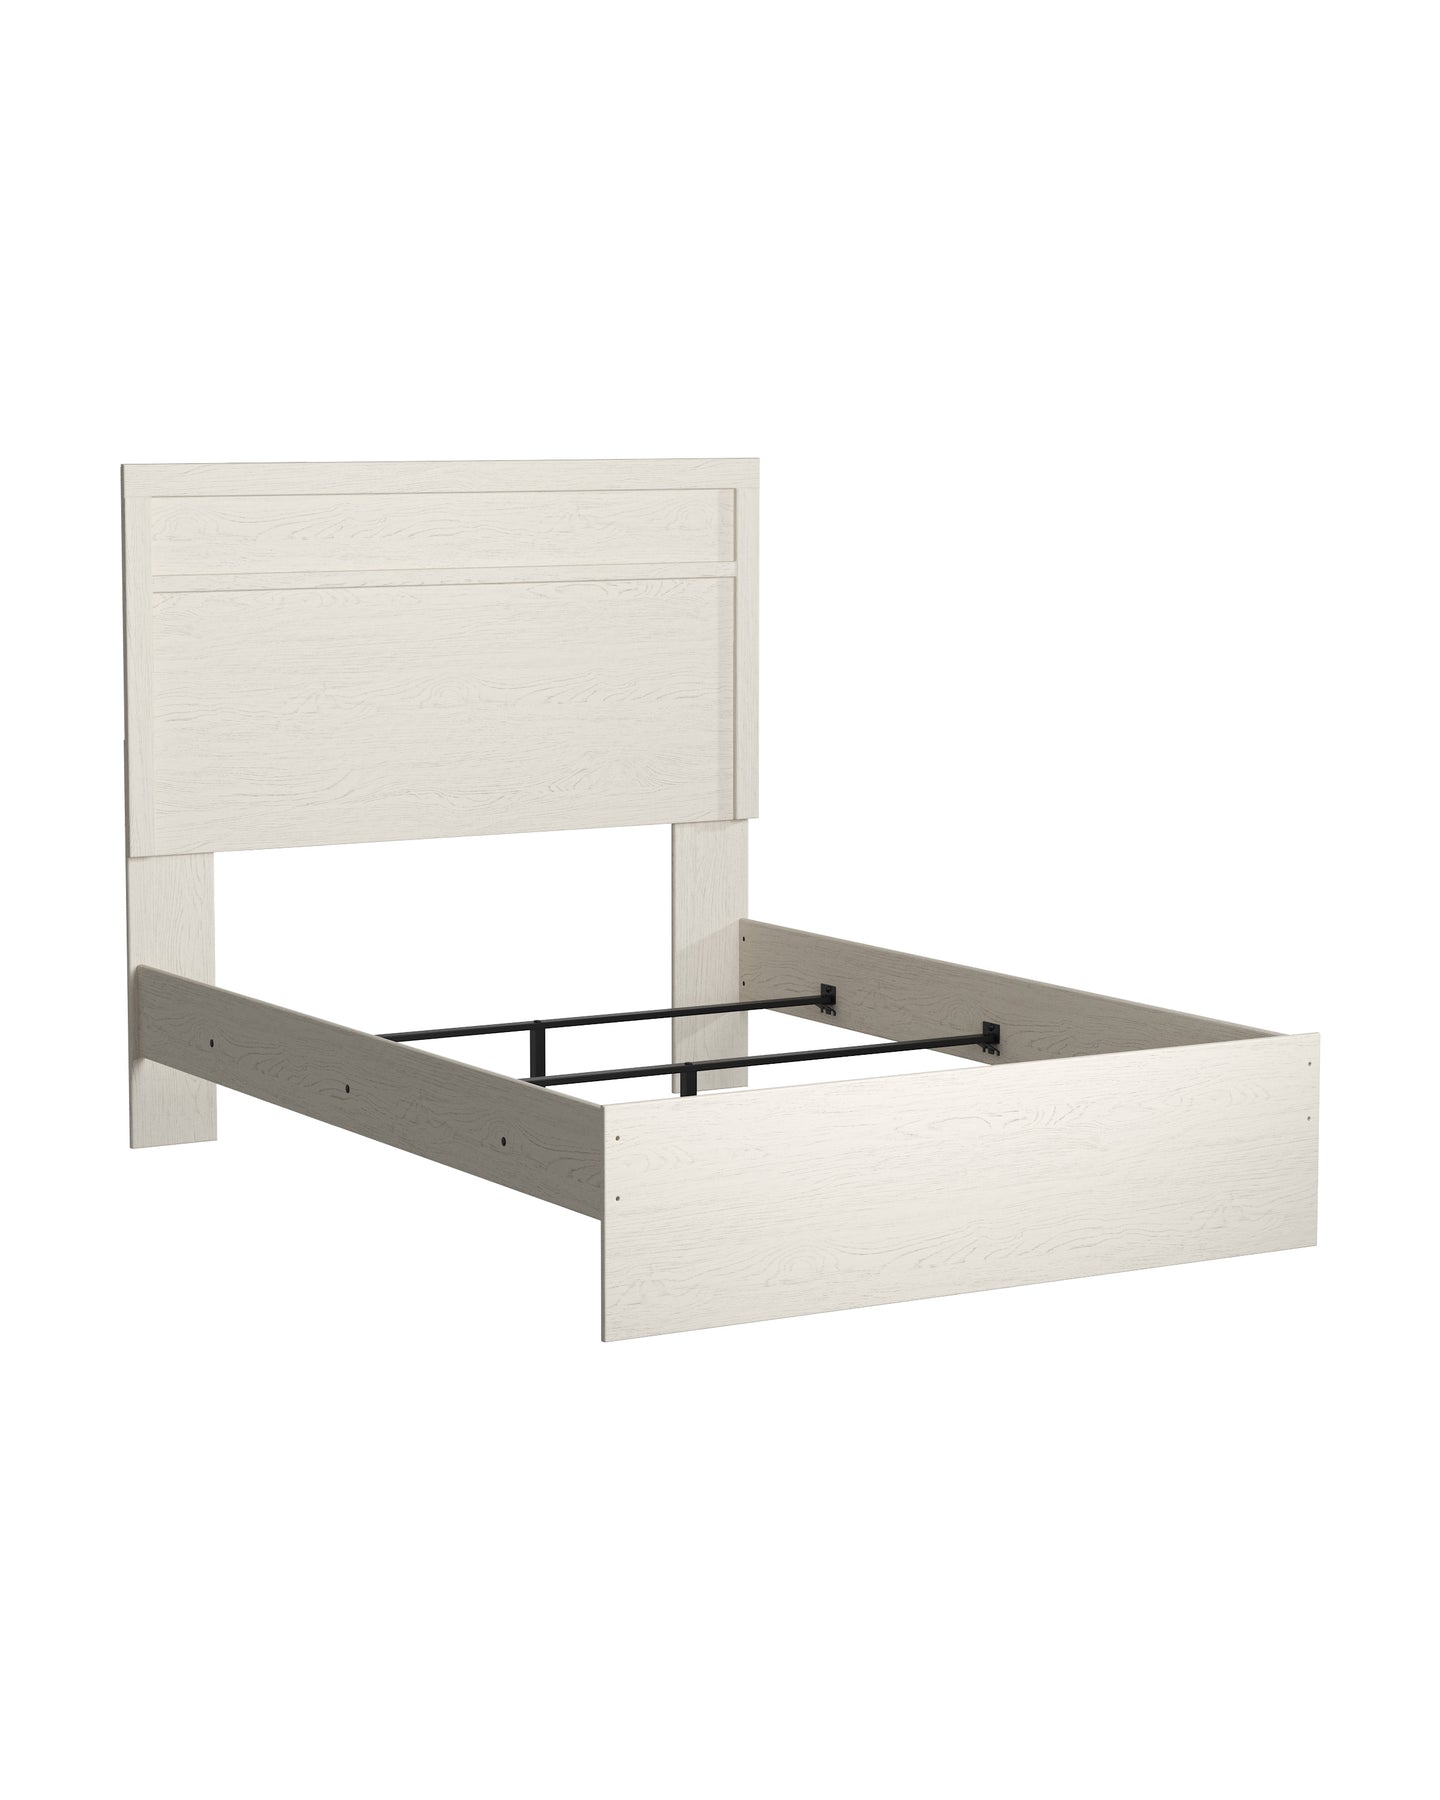 Stelsie Full Panel Bed - White - Furniture Depot (6601024274605)